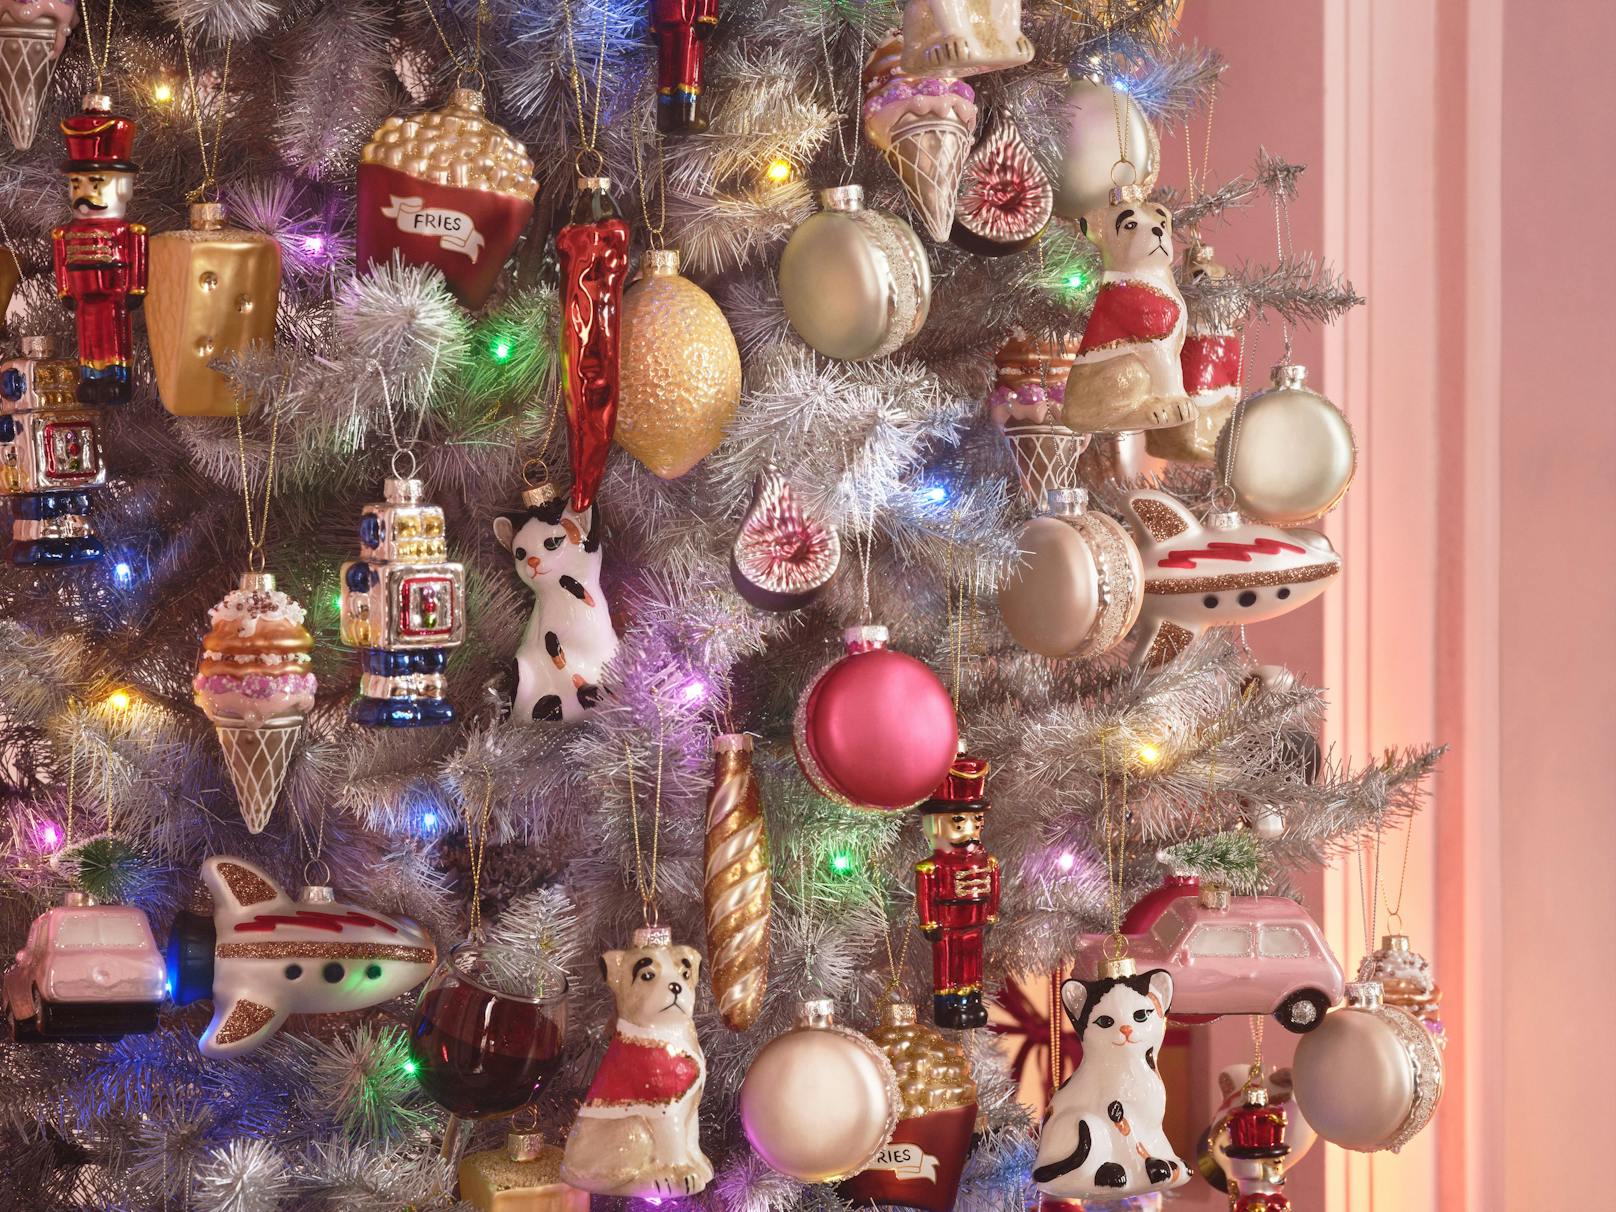 "Schmücken und noch mehr schmücken! Ein schöner Weihnachtsbaum sorgt für Festzeit-Stimmung. Wählen Sie ein Farbthema, das Ihnen gefällt und schmücken Sie den Baum mit übermäßig viel Schmuck in diesen Farbtönen.